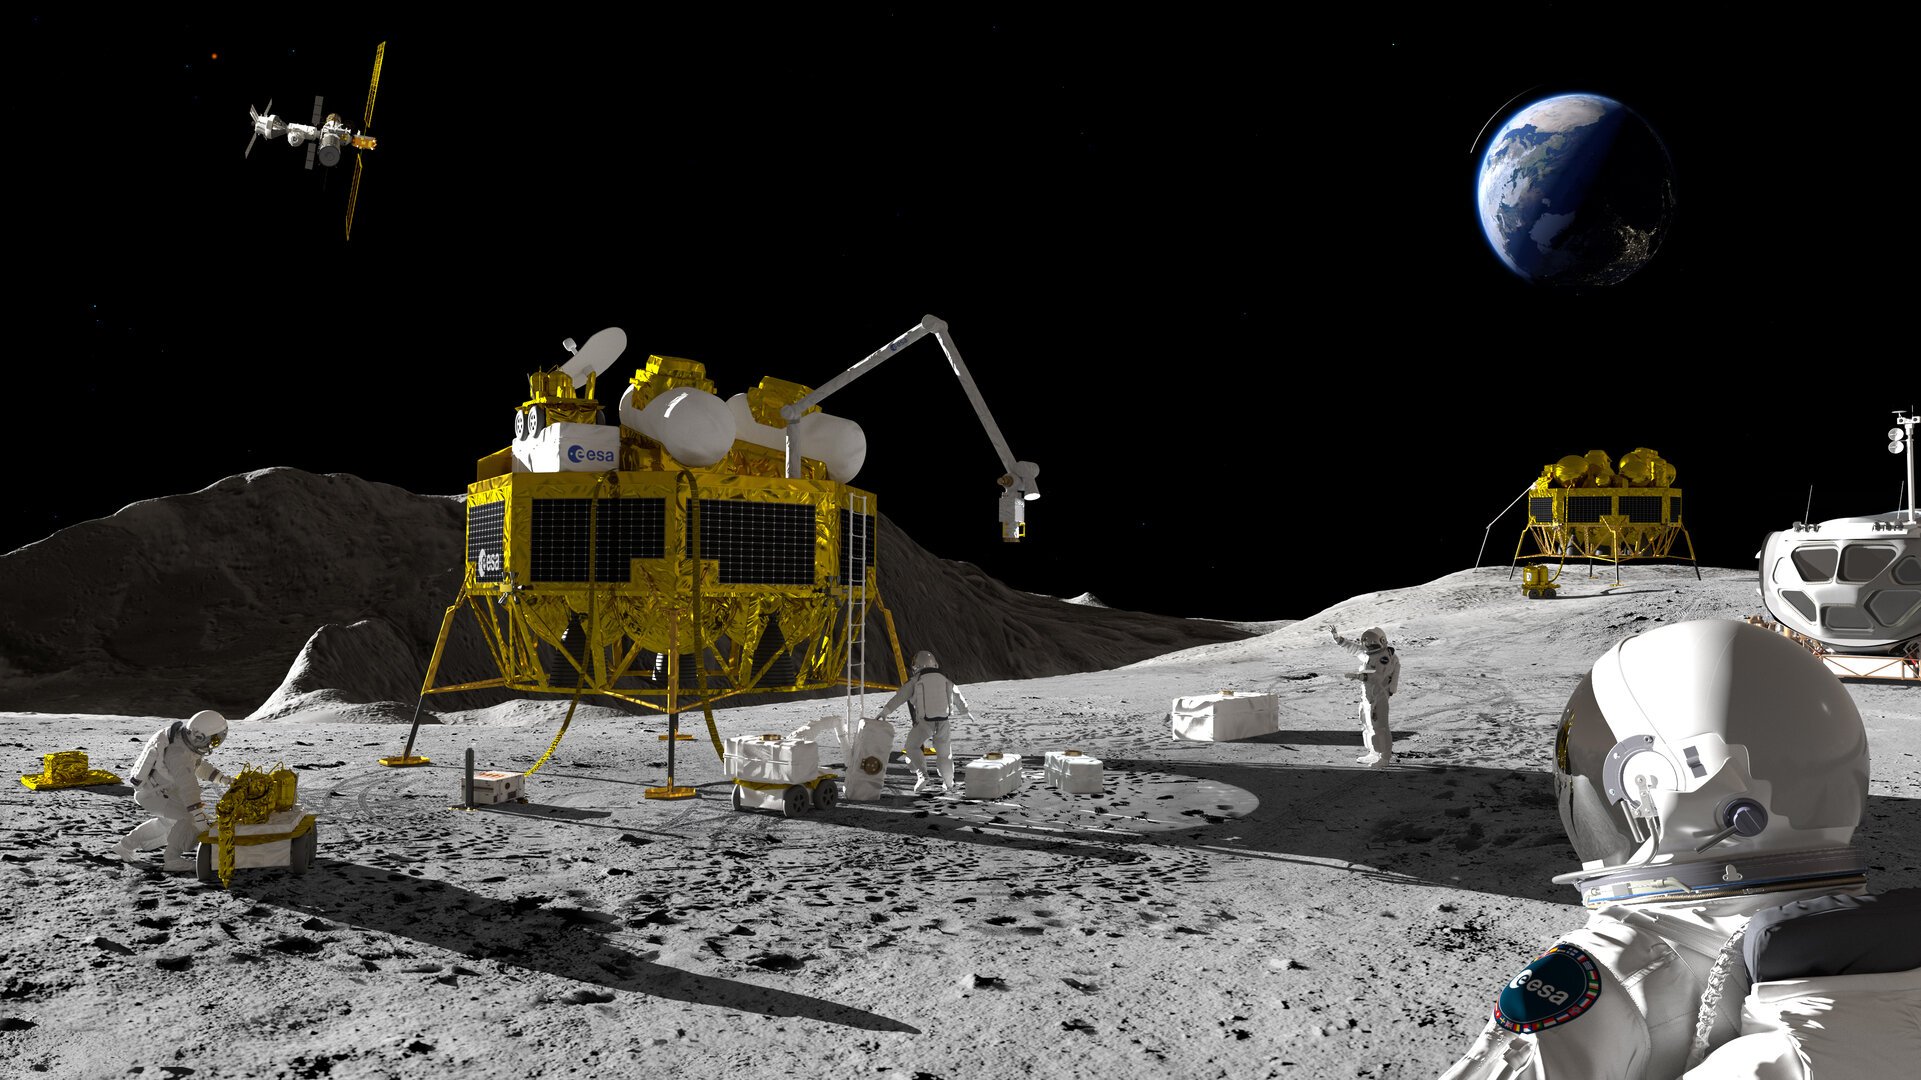 Moon surface scenario pillars